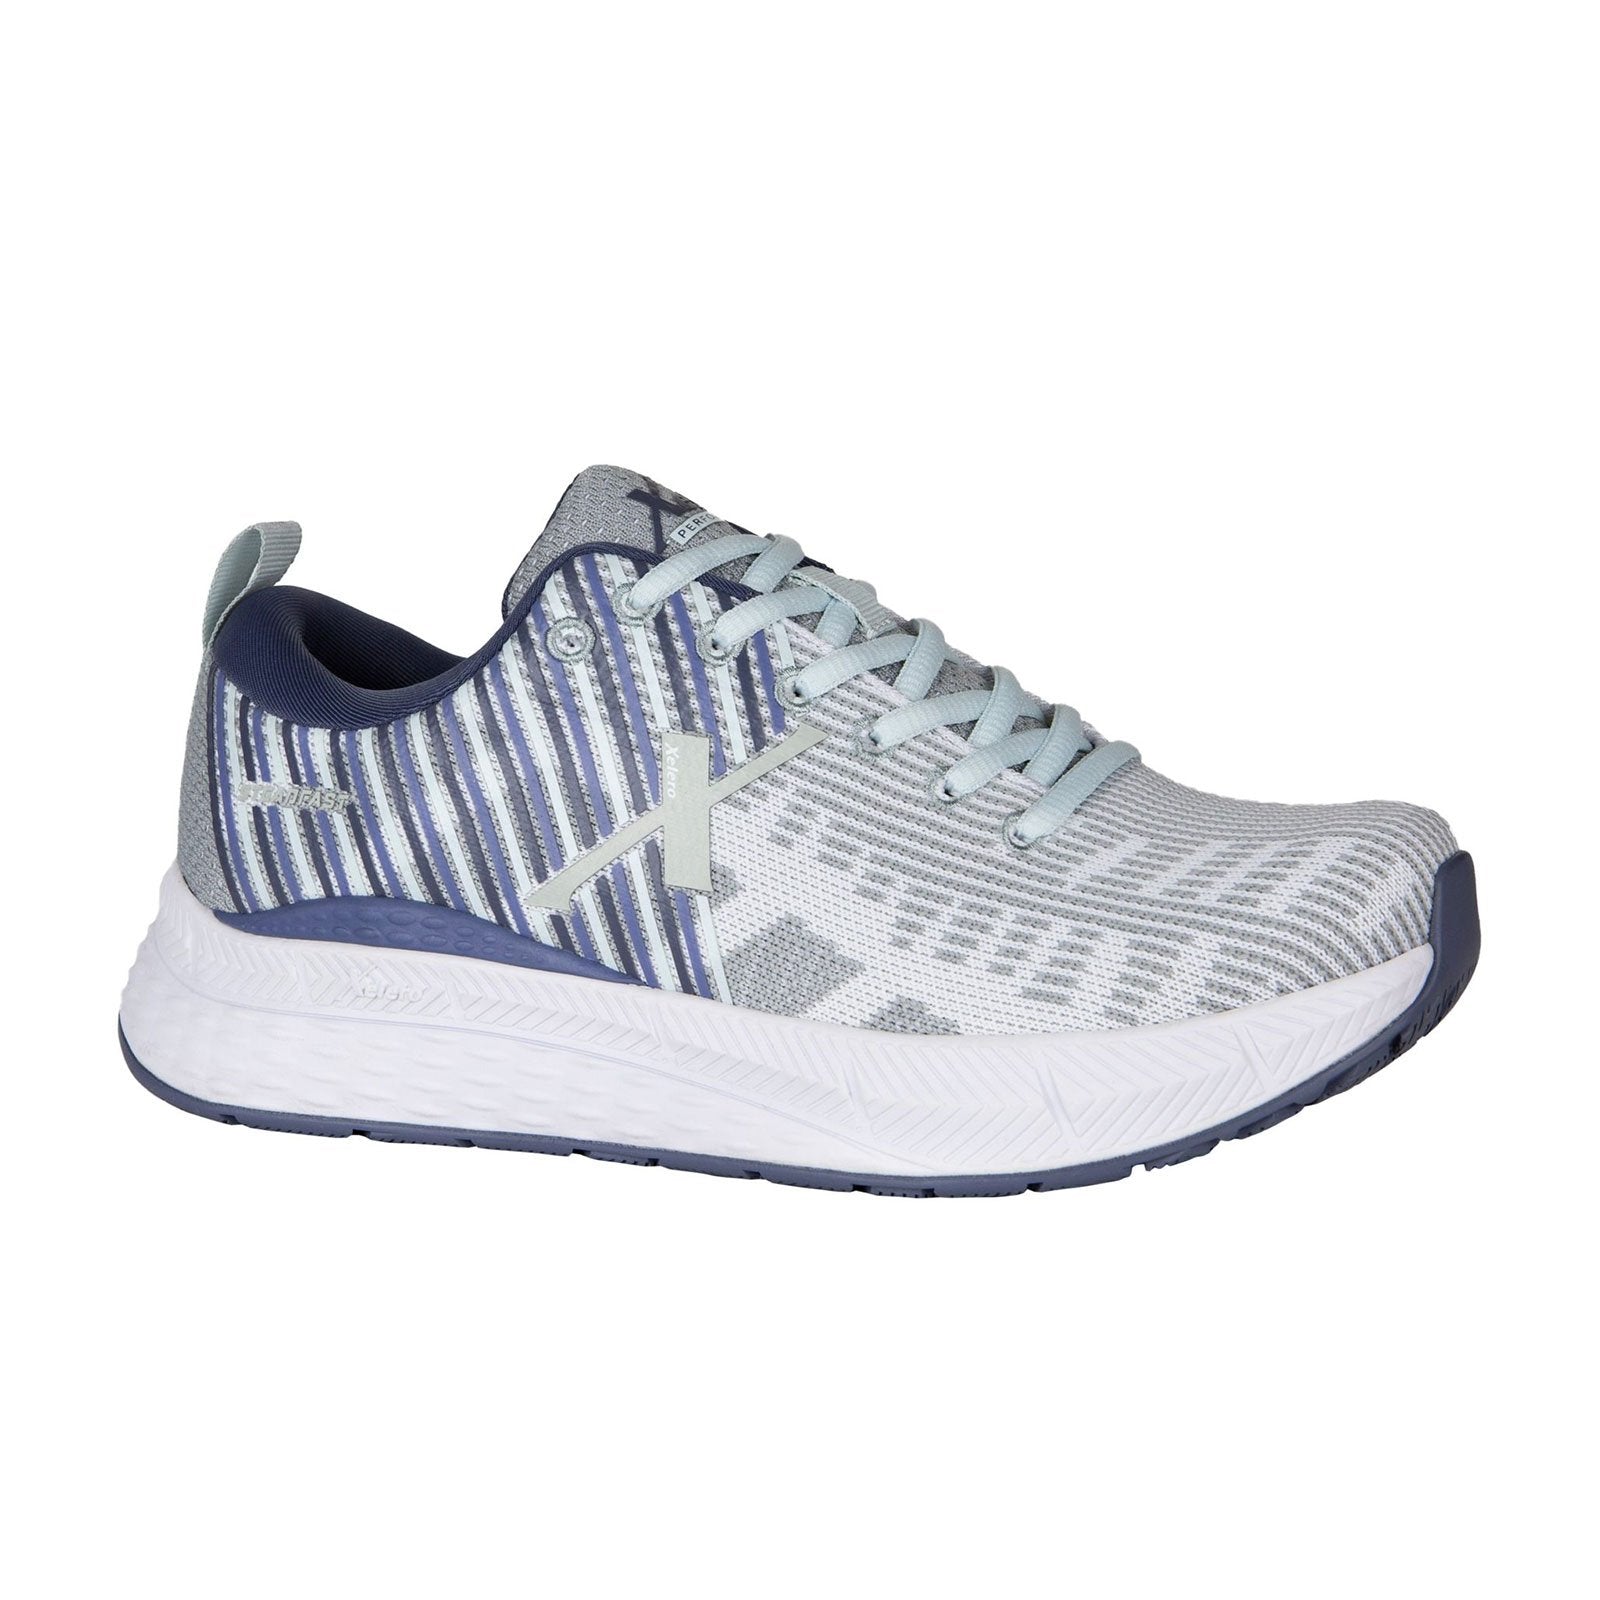 Xelero Steadfast Walking Shoe (Women) - White/Violet Athletic - Walking - The Heel Shoe Fitters